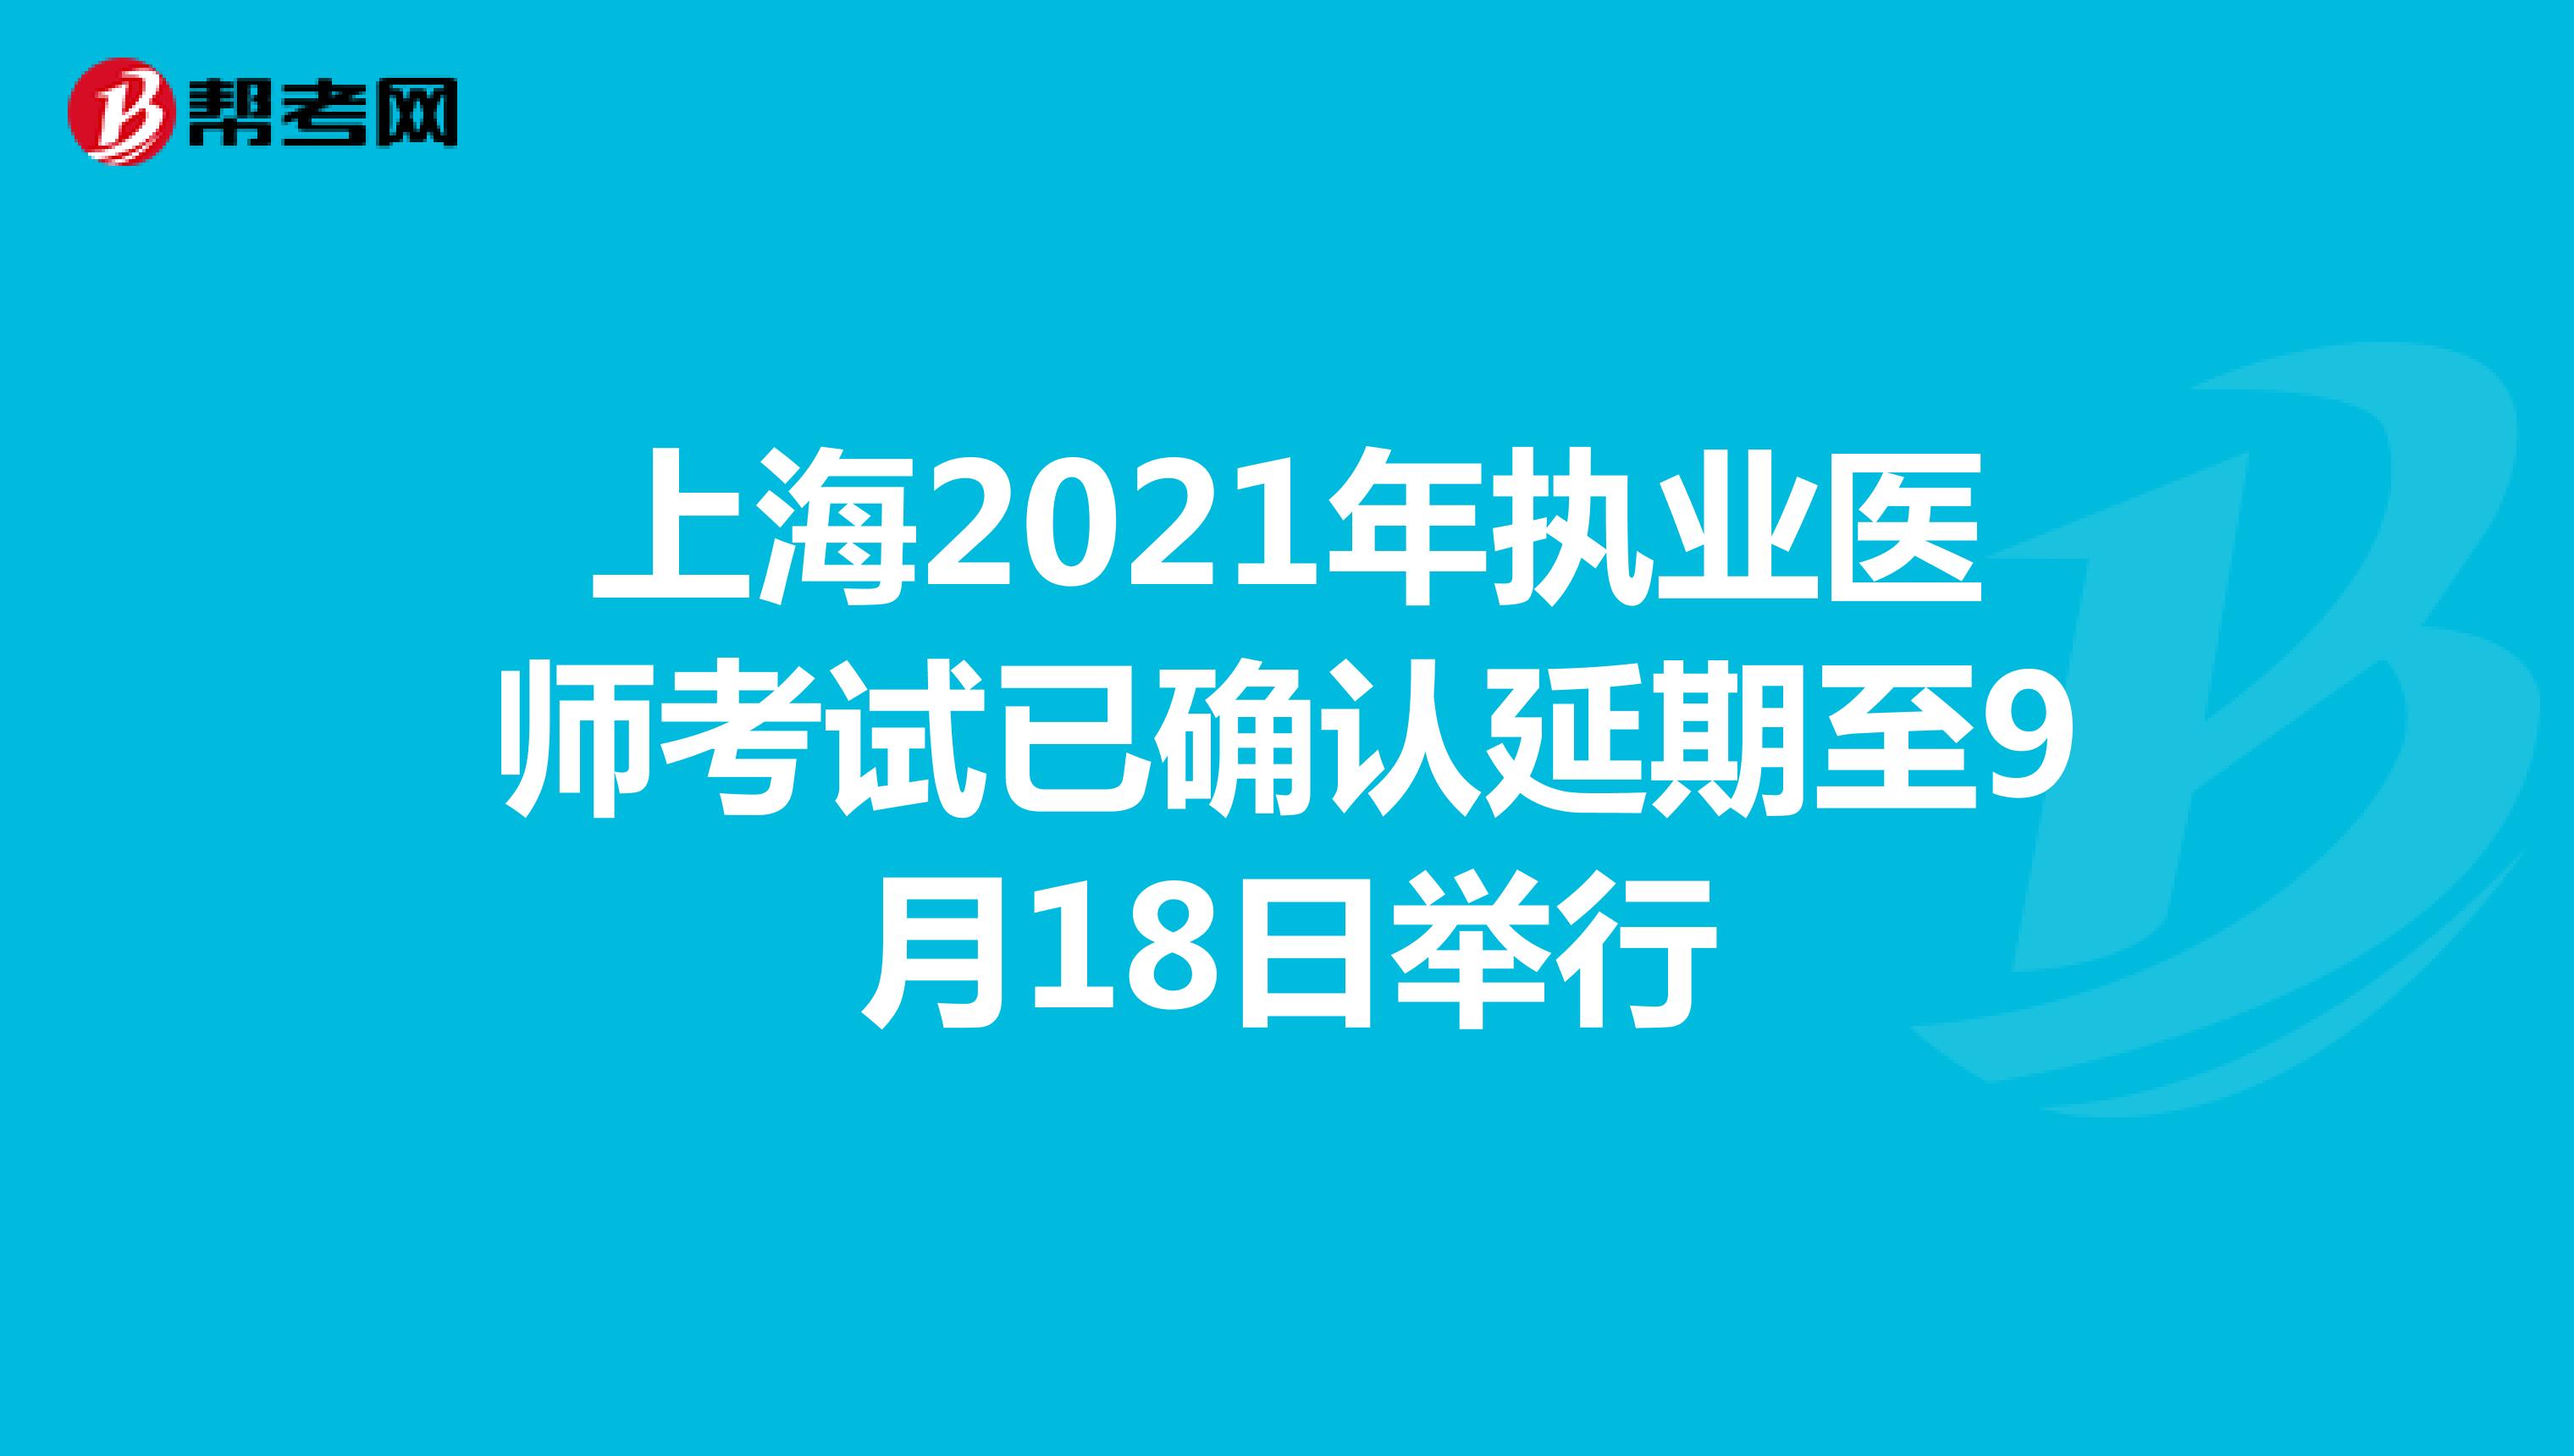 上海2021年执业医师考试已确认延期至9月18日举行